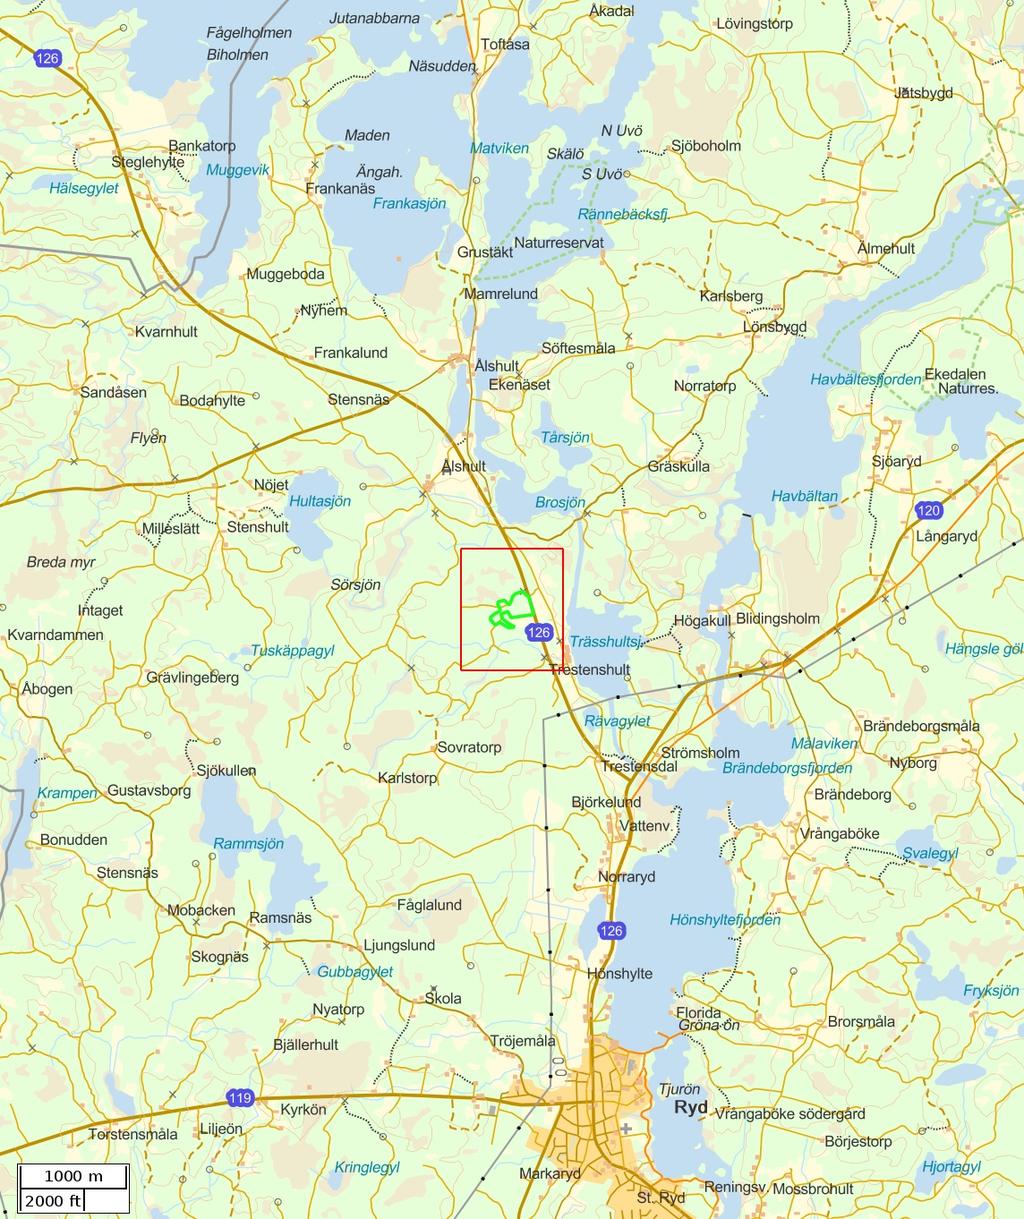 Traktdirektiv 2017-10-19 09:13 KKB Trestenshult Rotpost västra delen Hushållningssällskapet Skog Översiktskarta